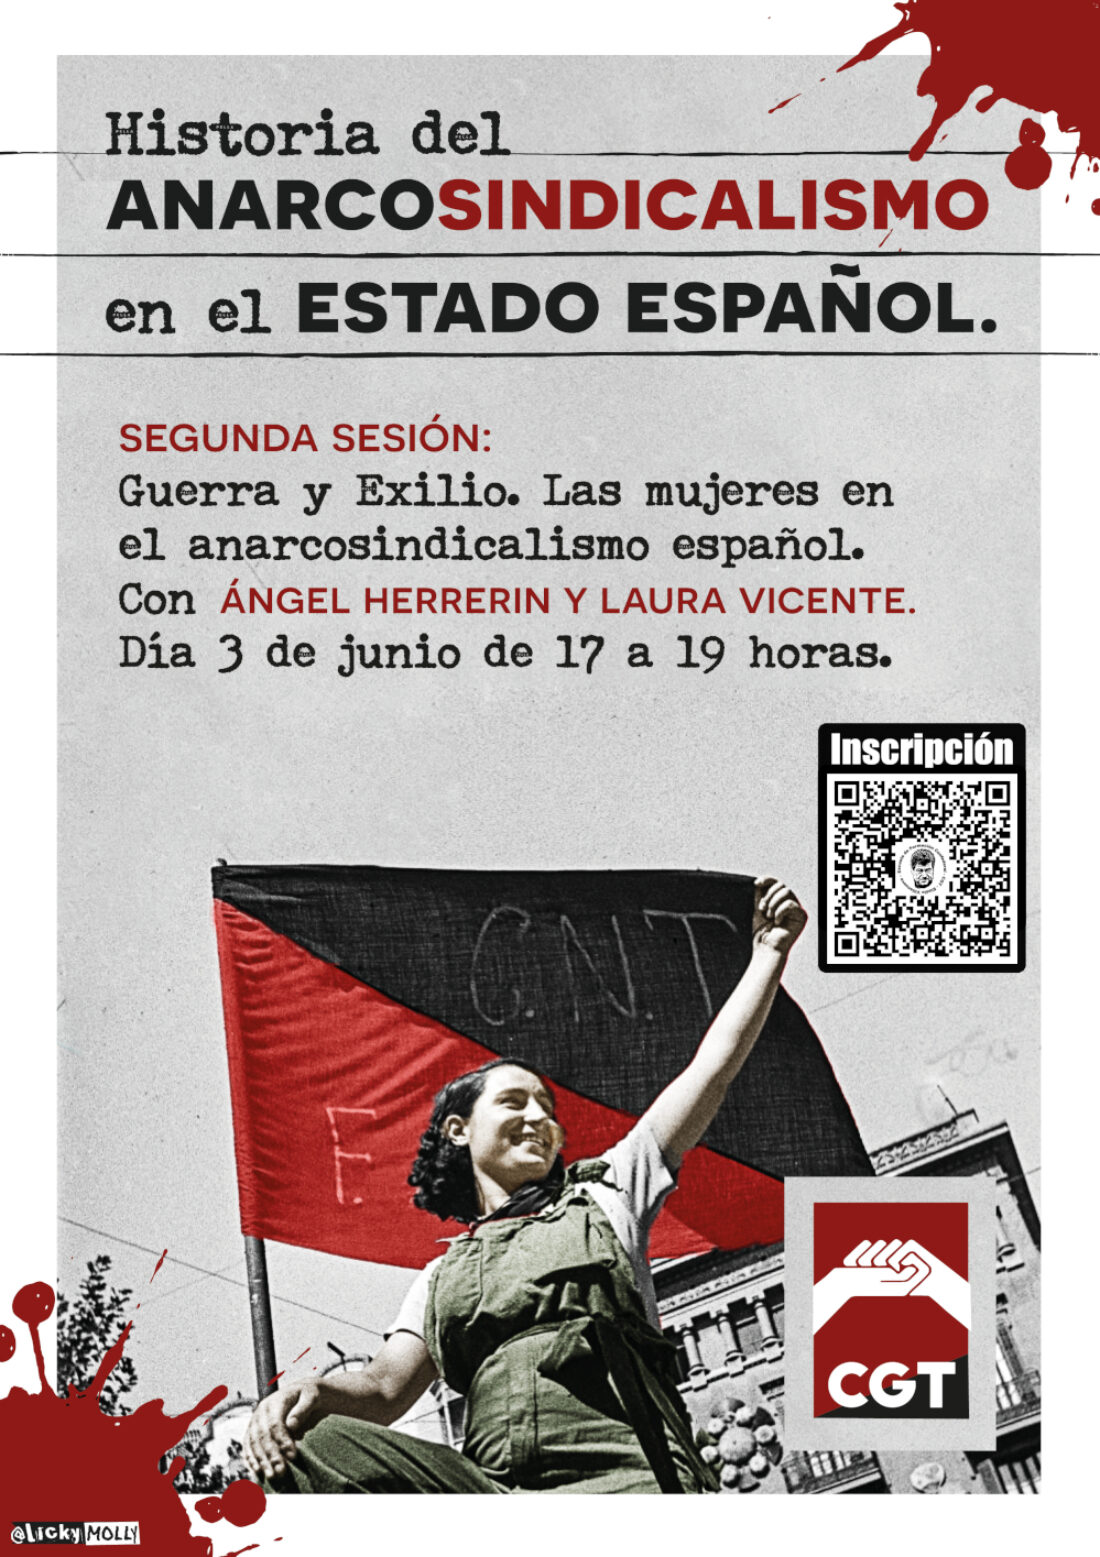 II Sesión sobre la Historia del Anarcosindicalismo en el Estado español